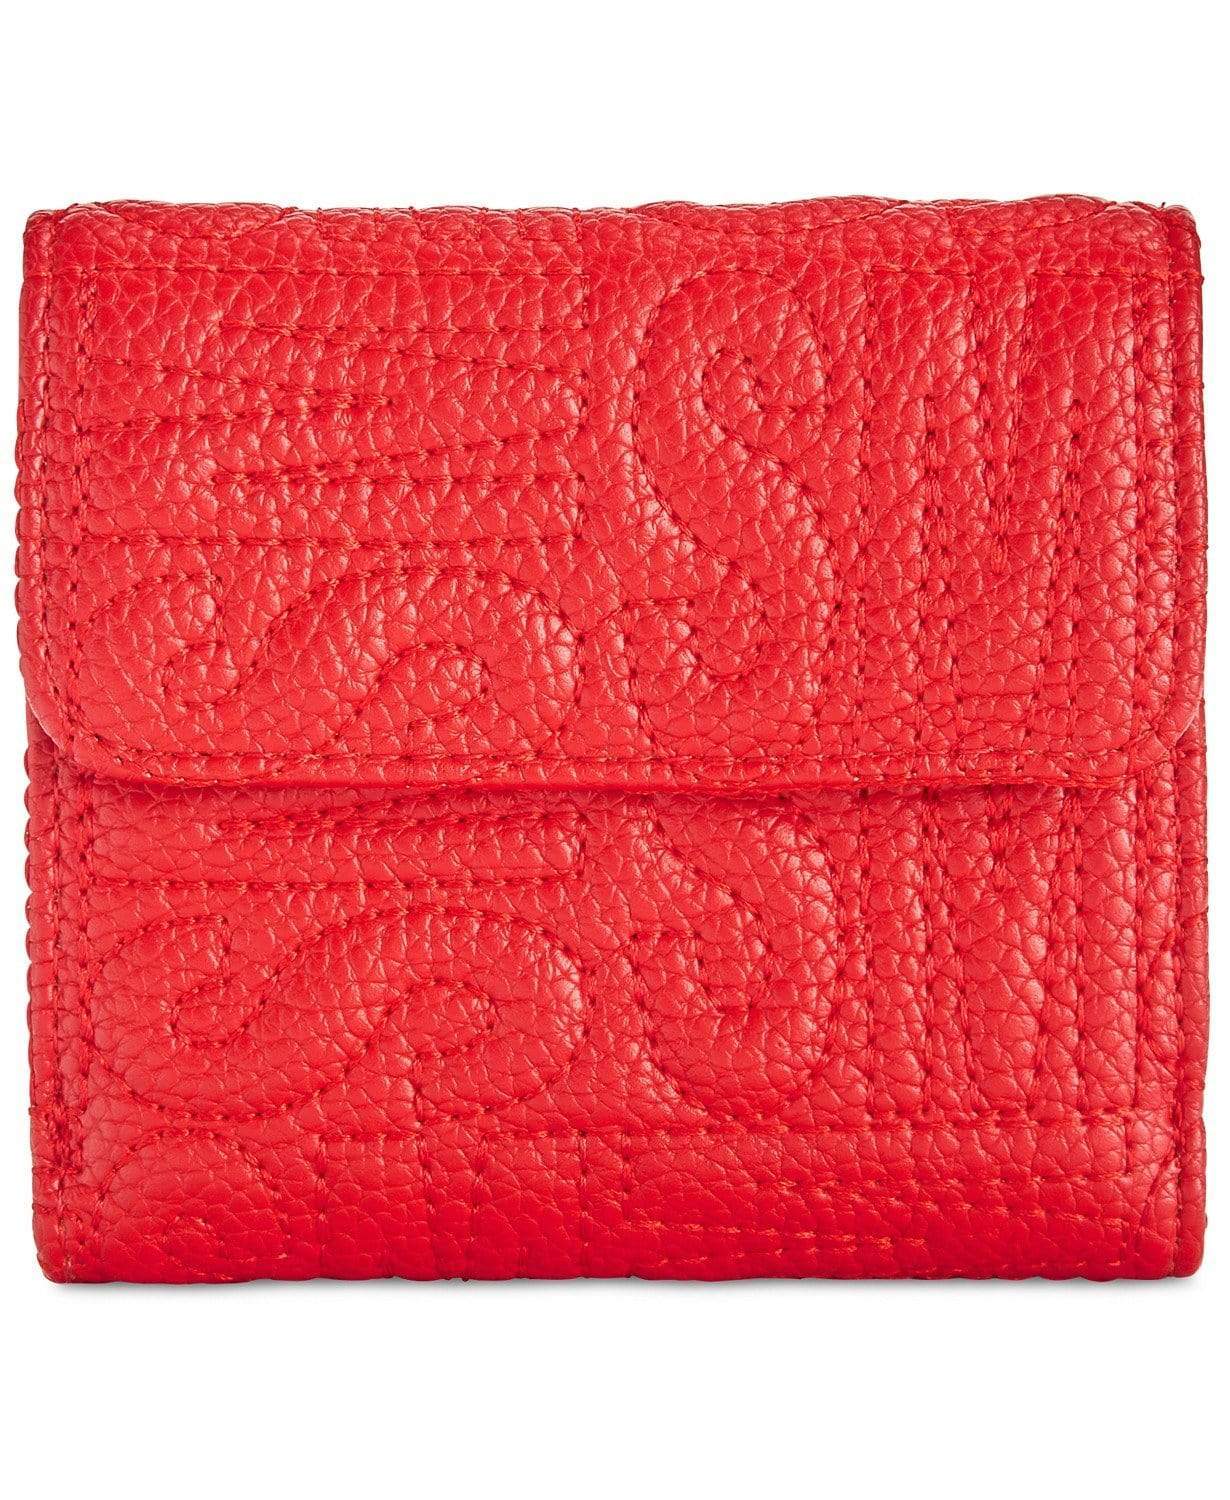 STEVE MADDEN Handbags STEVE MADDEN - Red Logo Mini Wallet